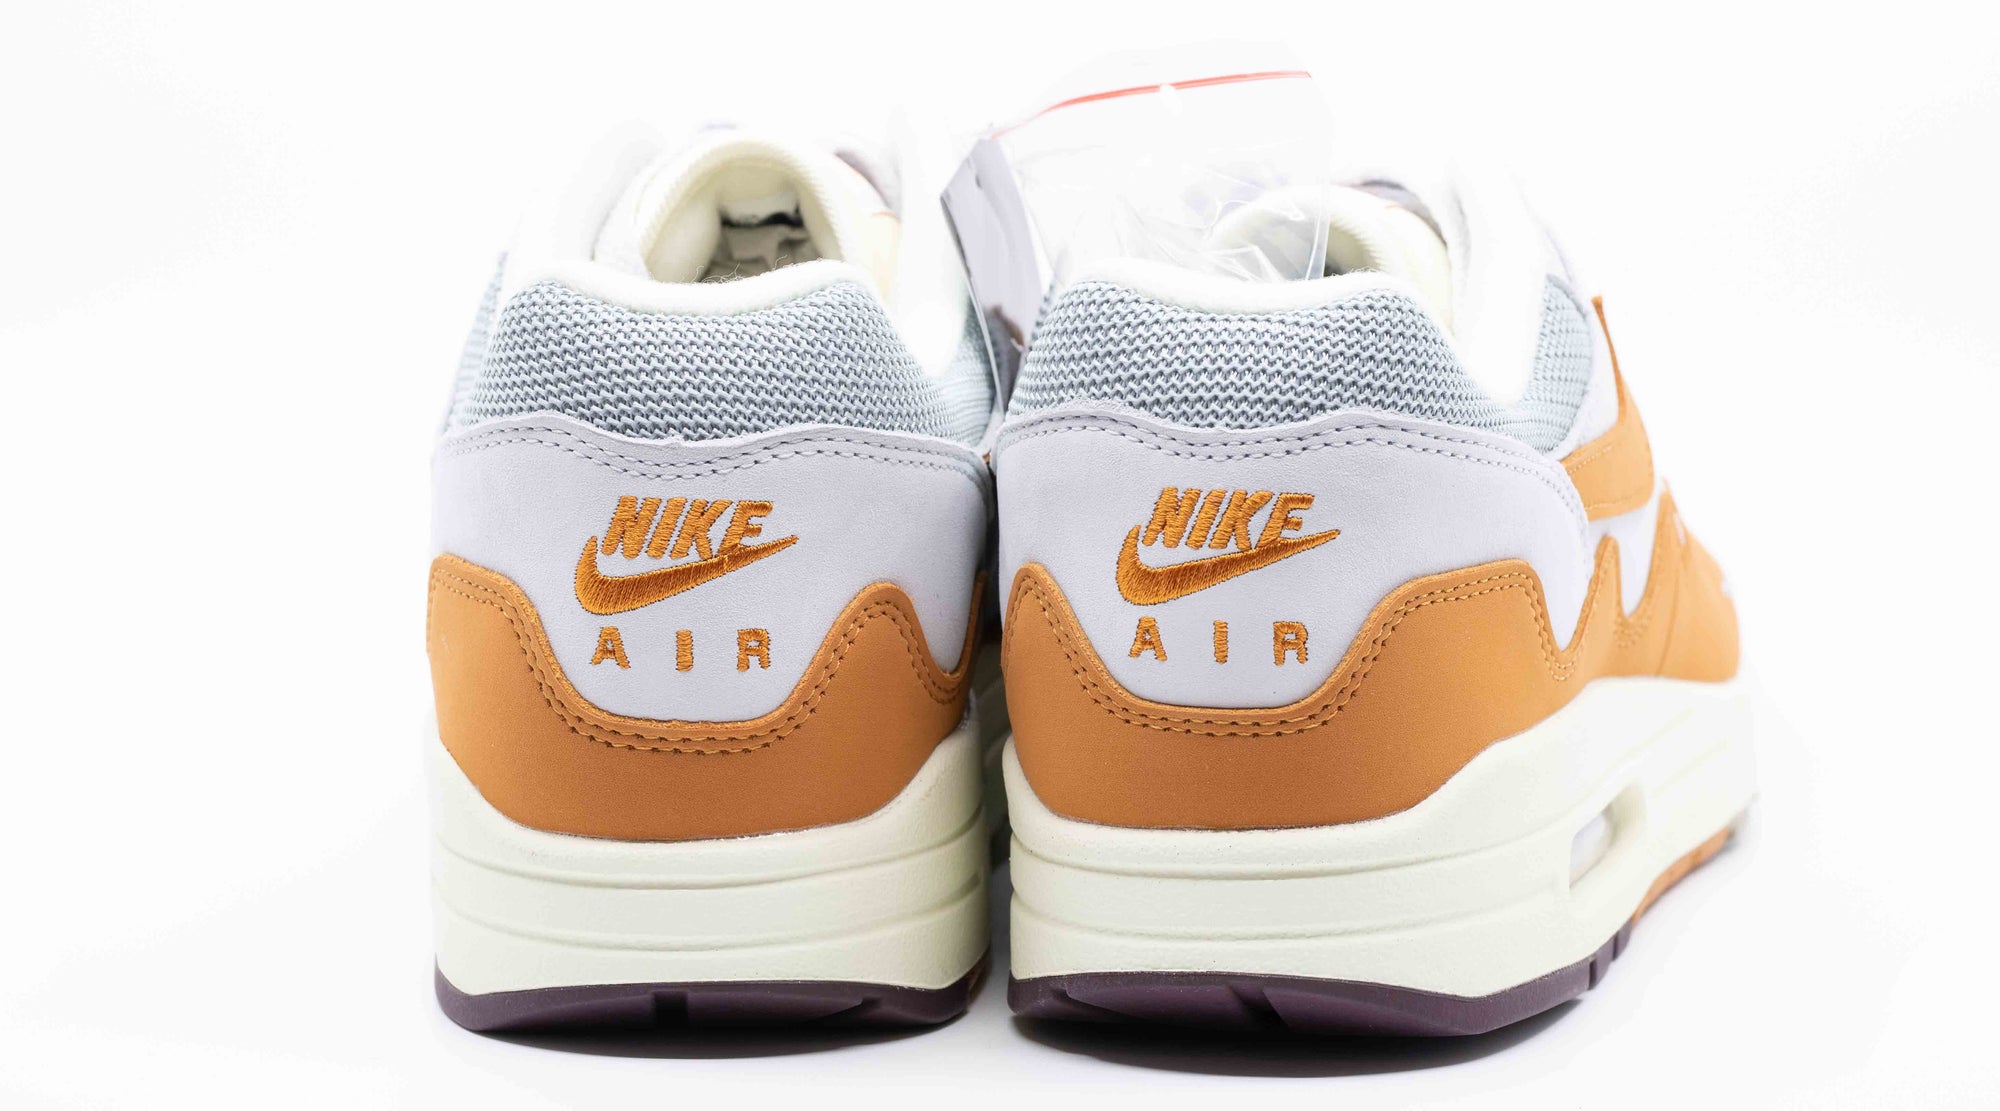 Nike Air Max 1 x Patta Monarch